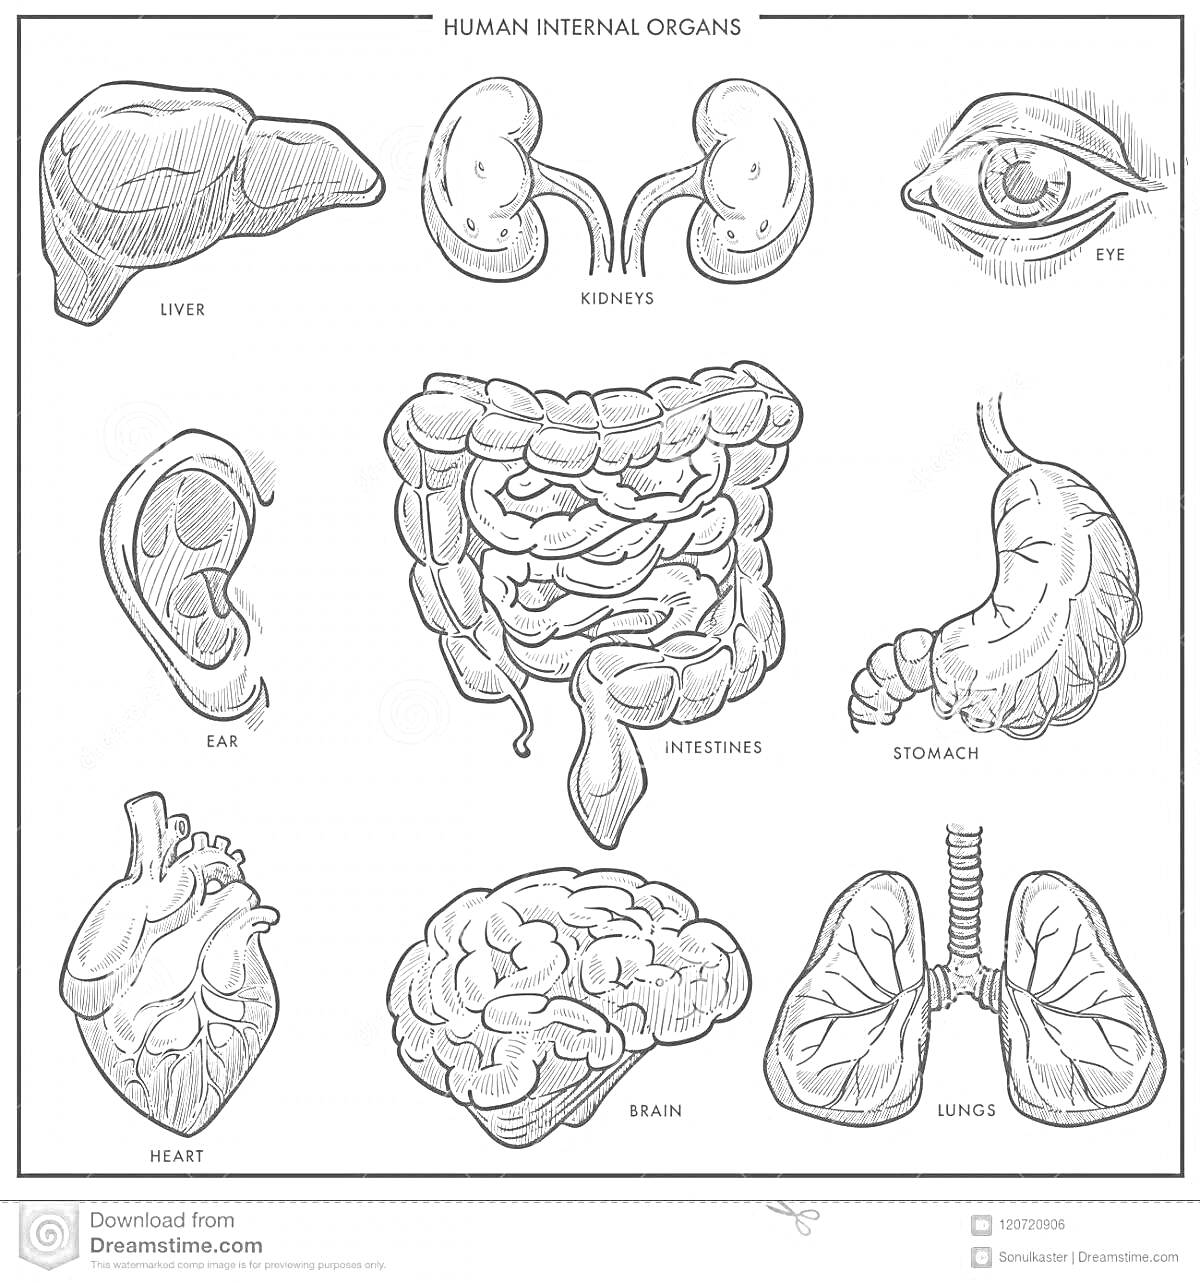 внутренние органы – печень, почки, глаз, ухо, кишечник, желудок, сердце, мозг, легкие